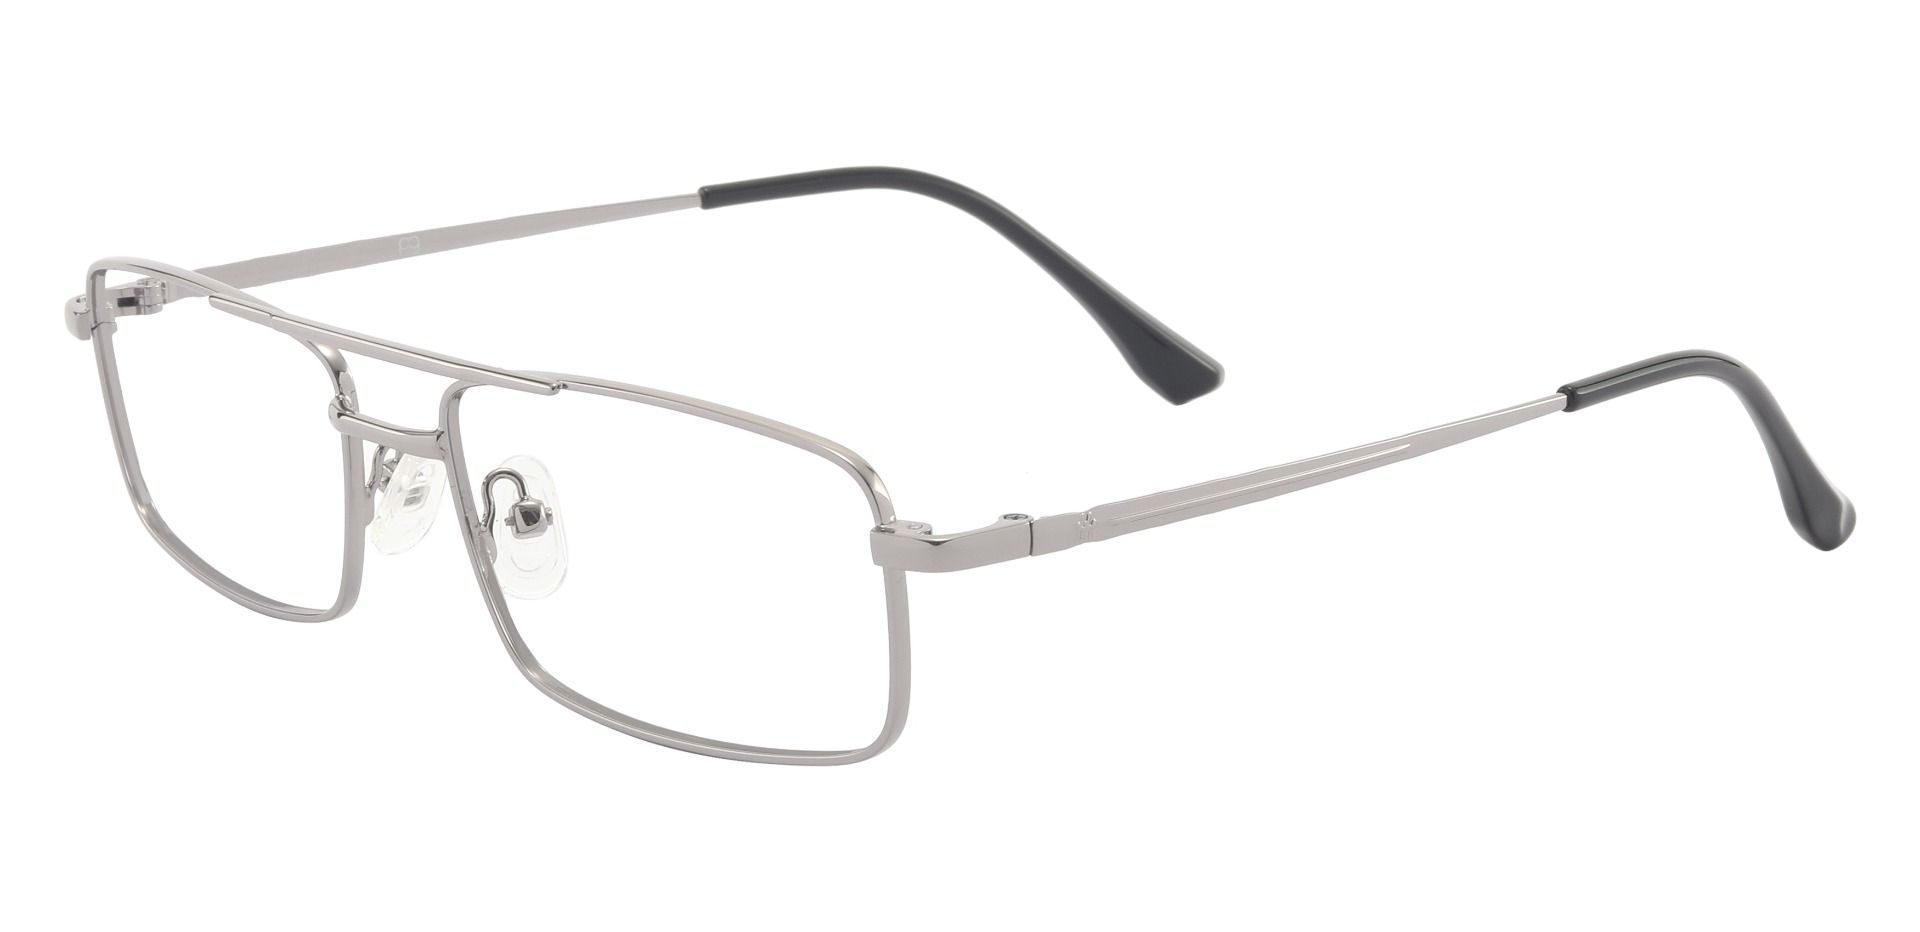 Ortega Aviator Prescription Glasses - Silver